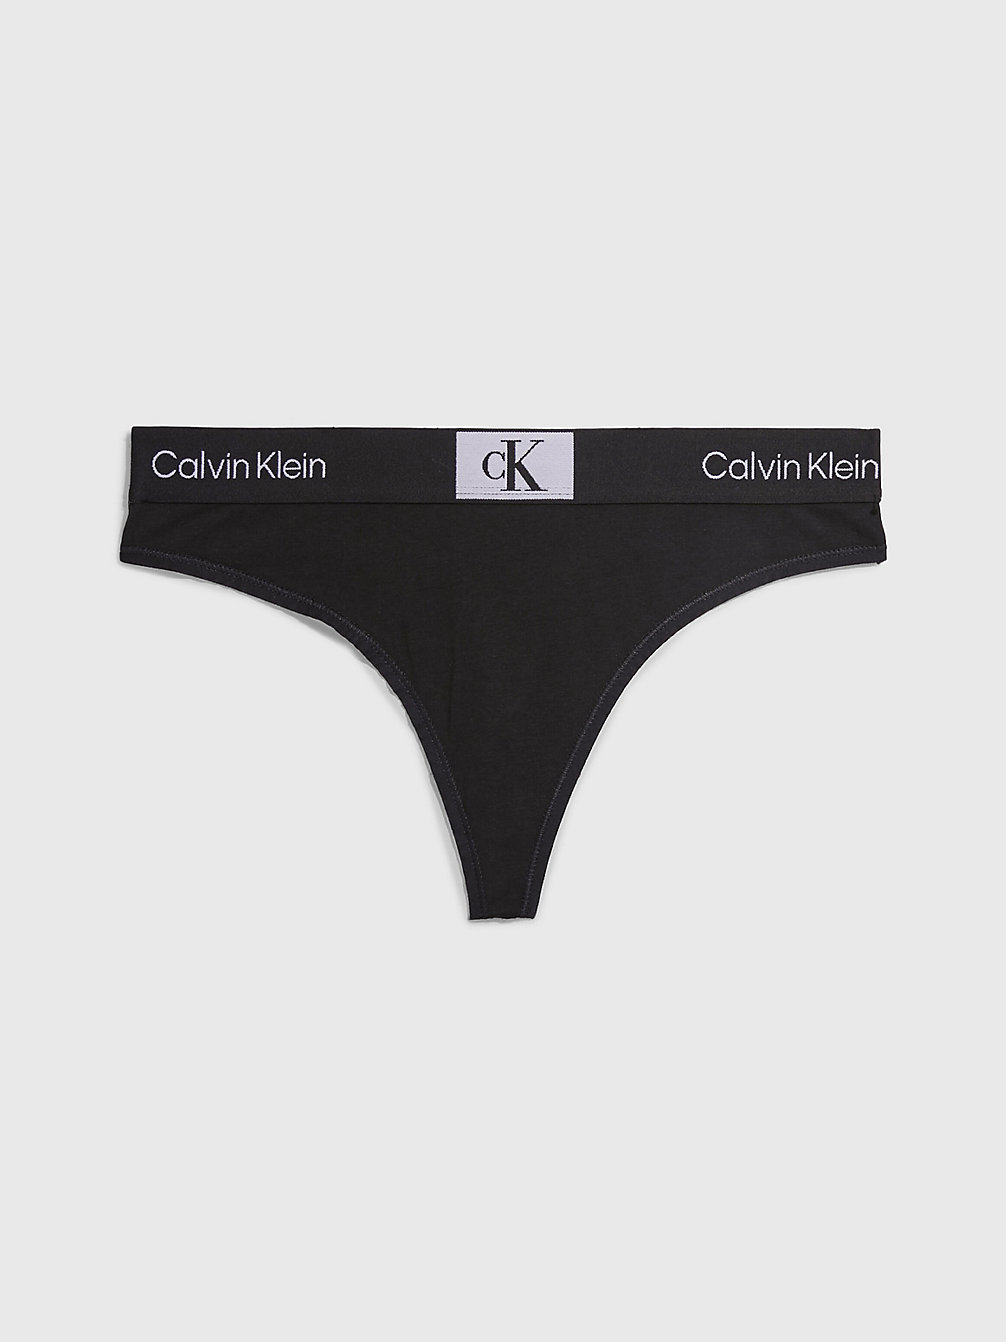 BLACK > Thong - Ck96 > undefined Женщины - Calvin Klein